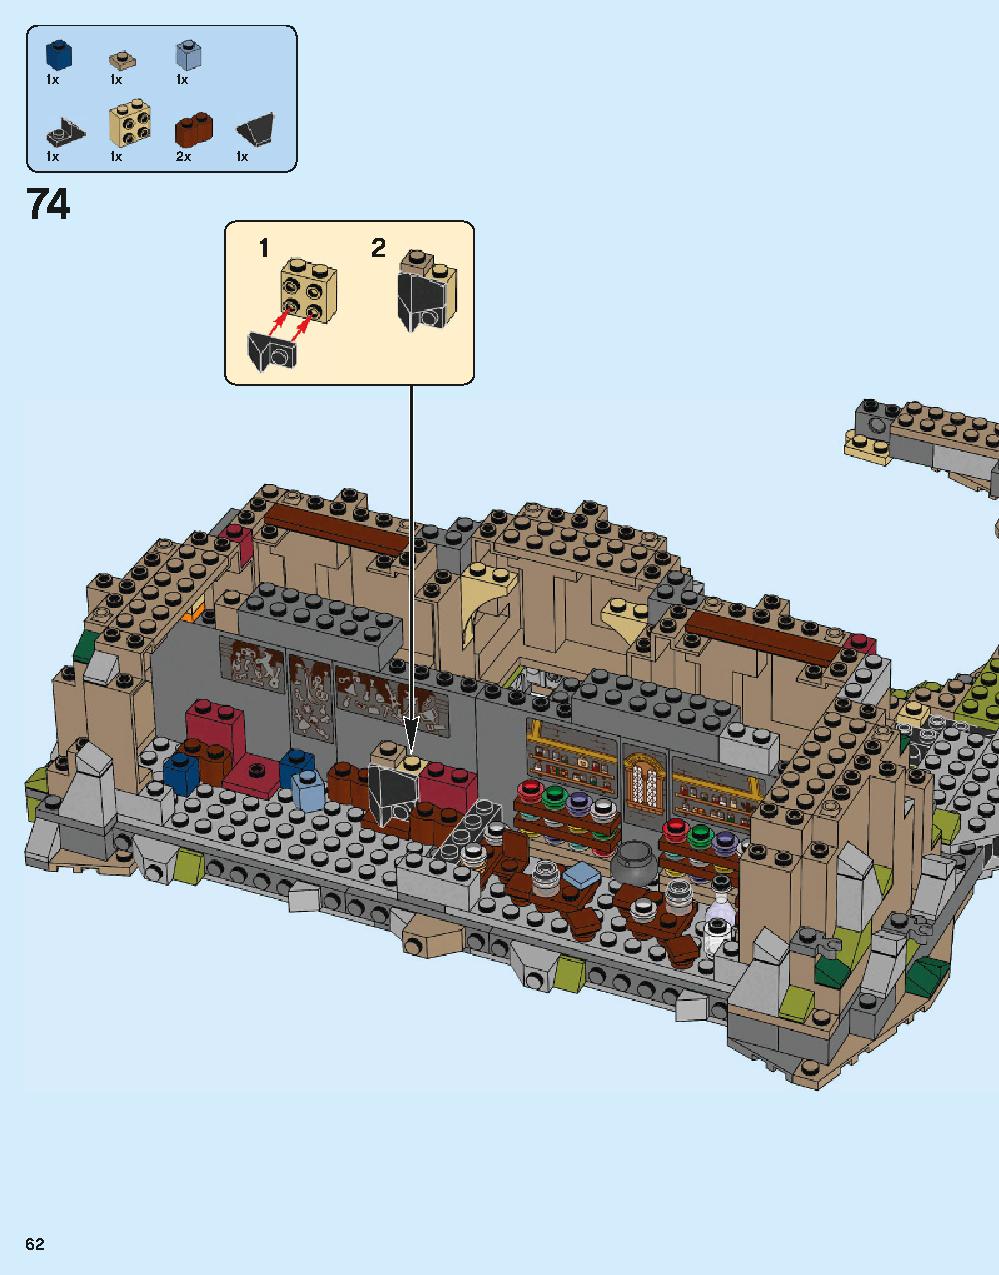 ホグワーツ城 71043 レゴの商品情報 レゴの説明書・組立方法 62 page